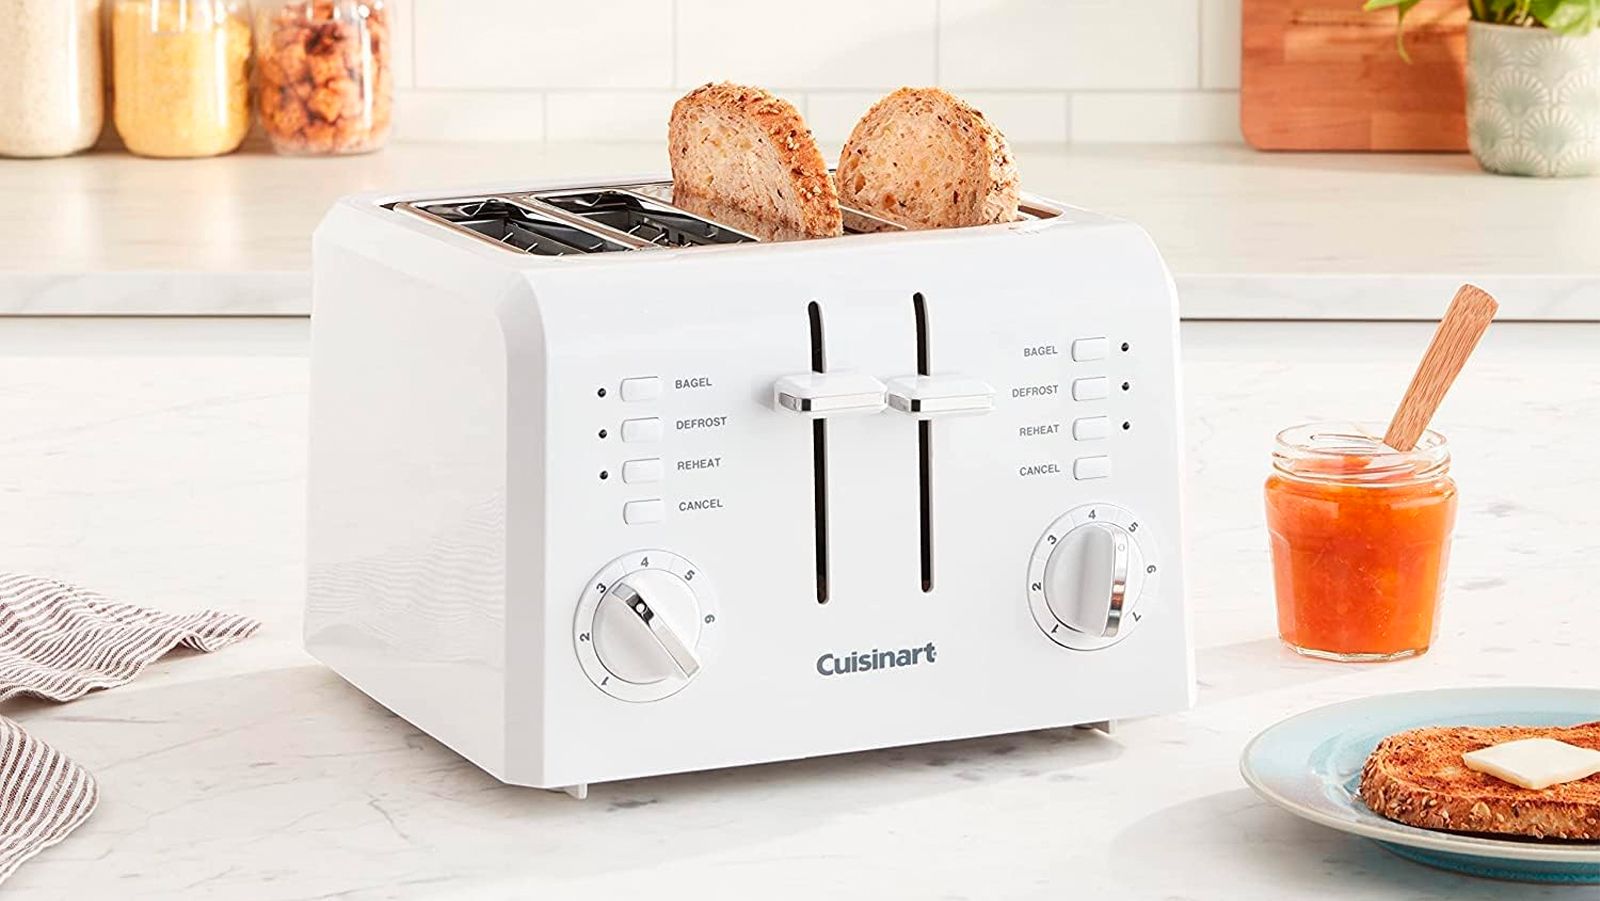 https://media.cnn.com/api/v1/images/stellar/prod/cuisinart-toaster-lead-cnnu.jpg?c=original